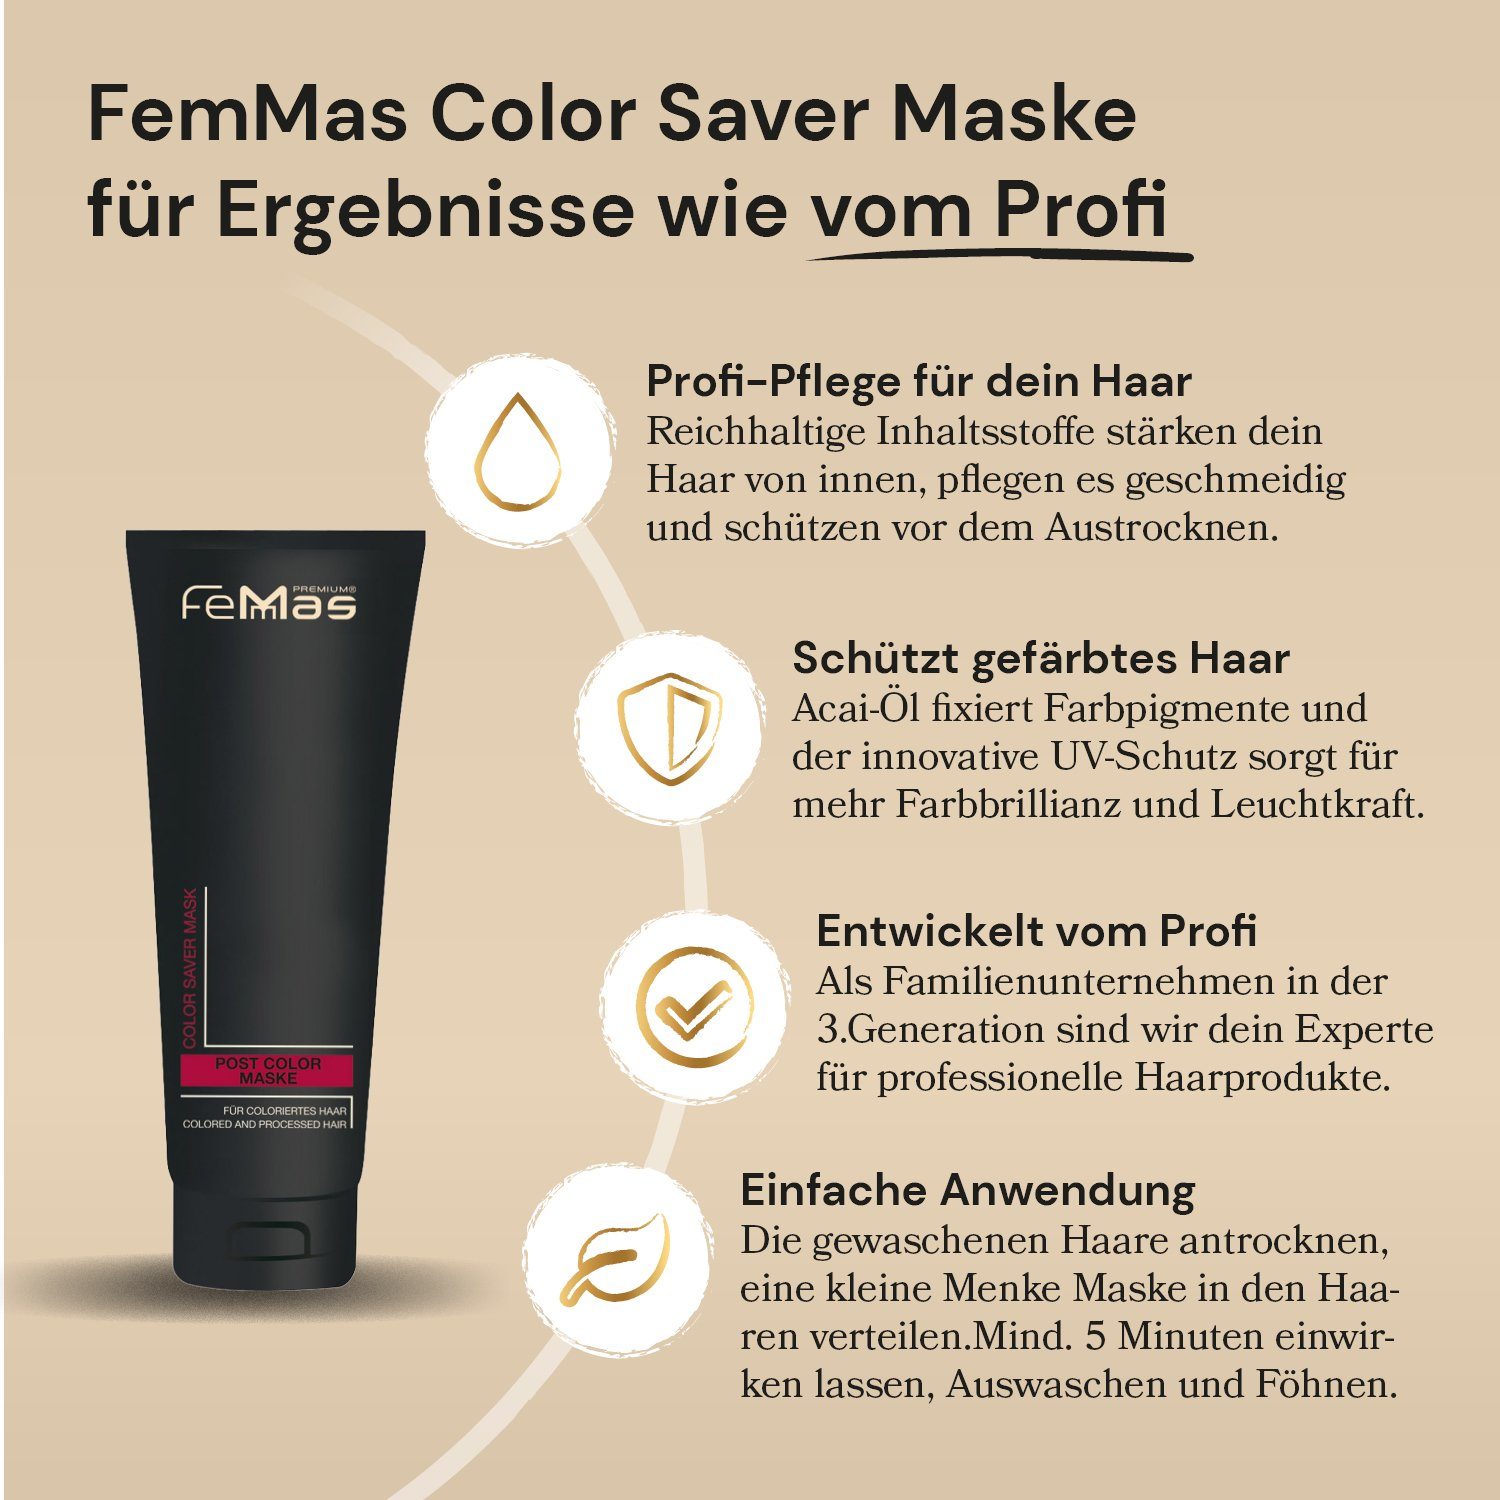 Femmas Premium Haarmaske FemMas Color 250ml Haarmaske Saver